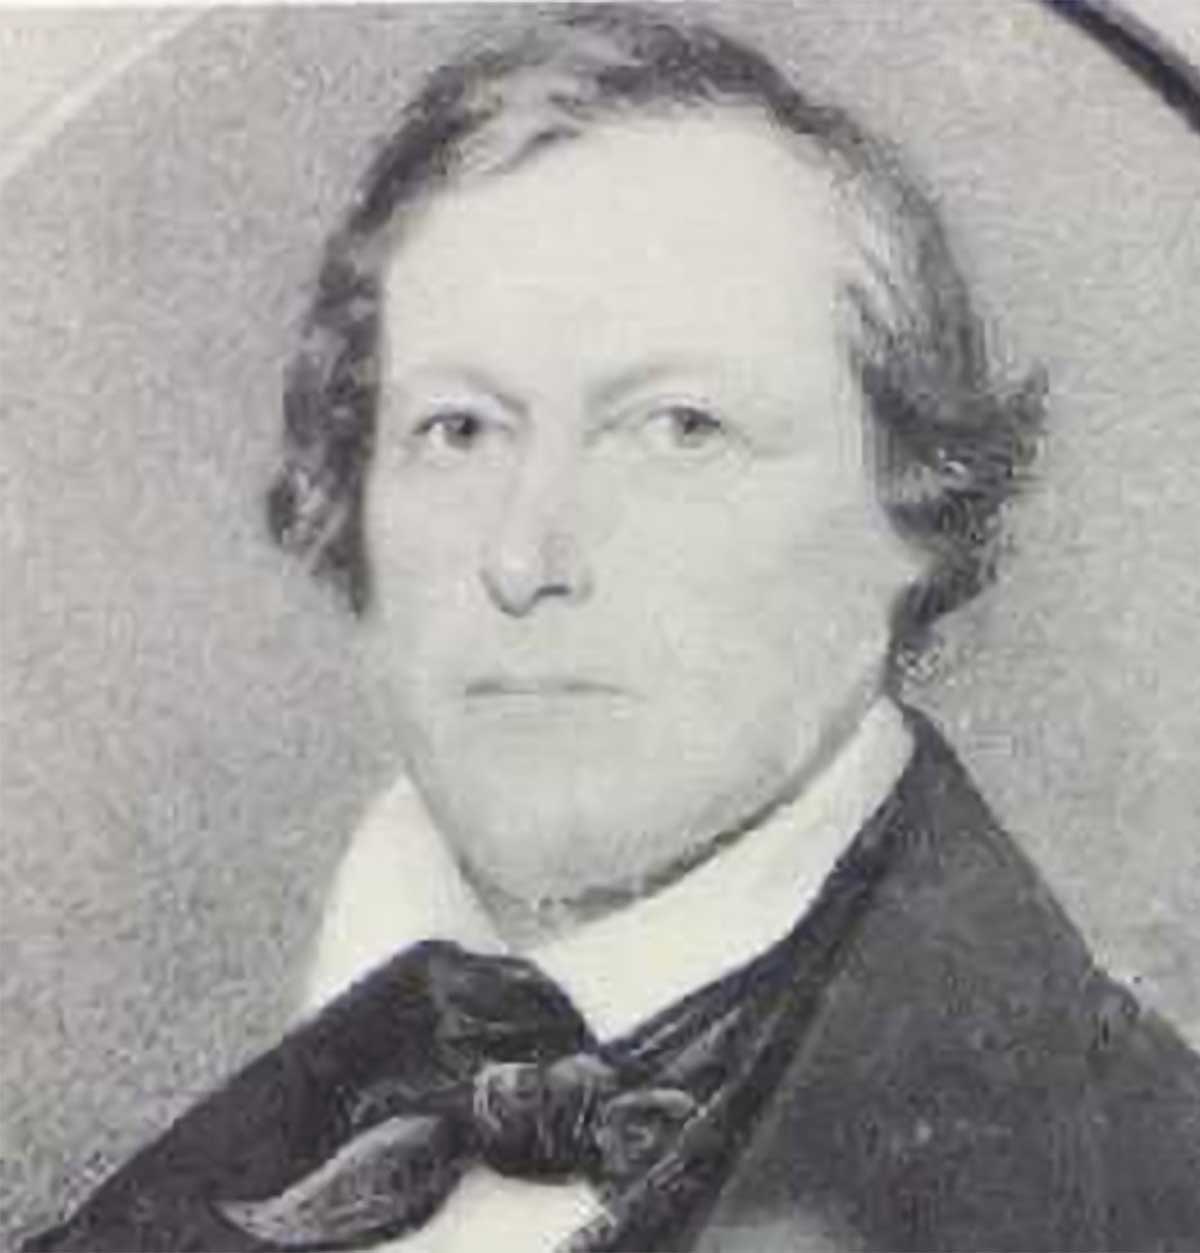 A photograph of Joshua John Ward.